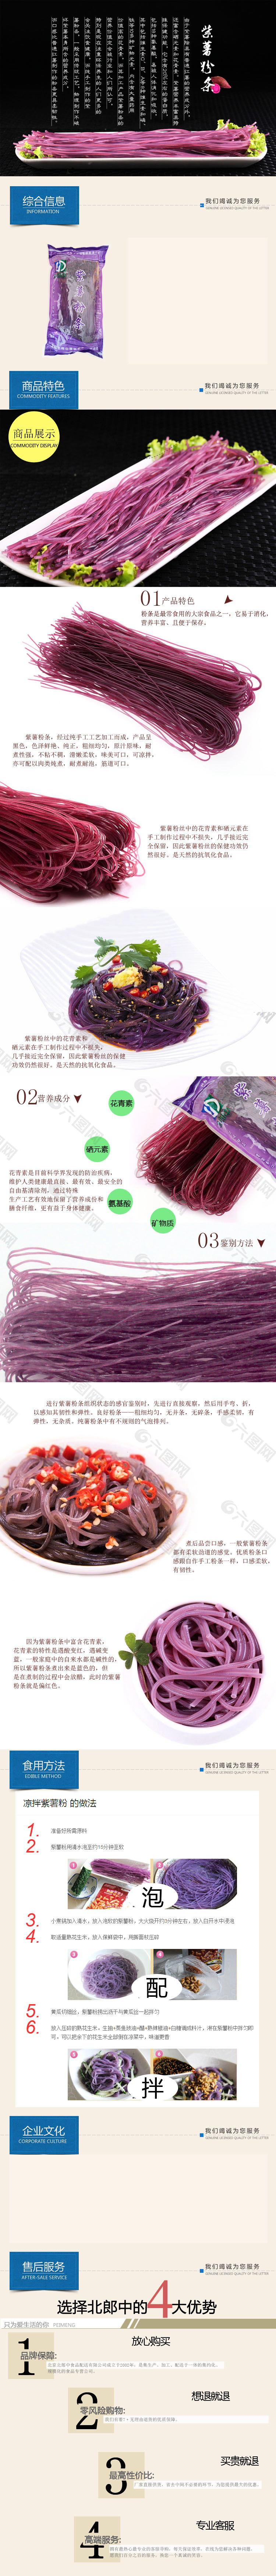 紫薯粉条商品详细摸版高清PSD 下载